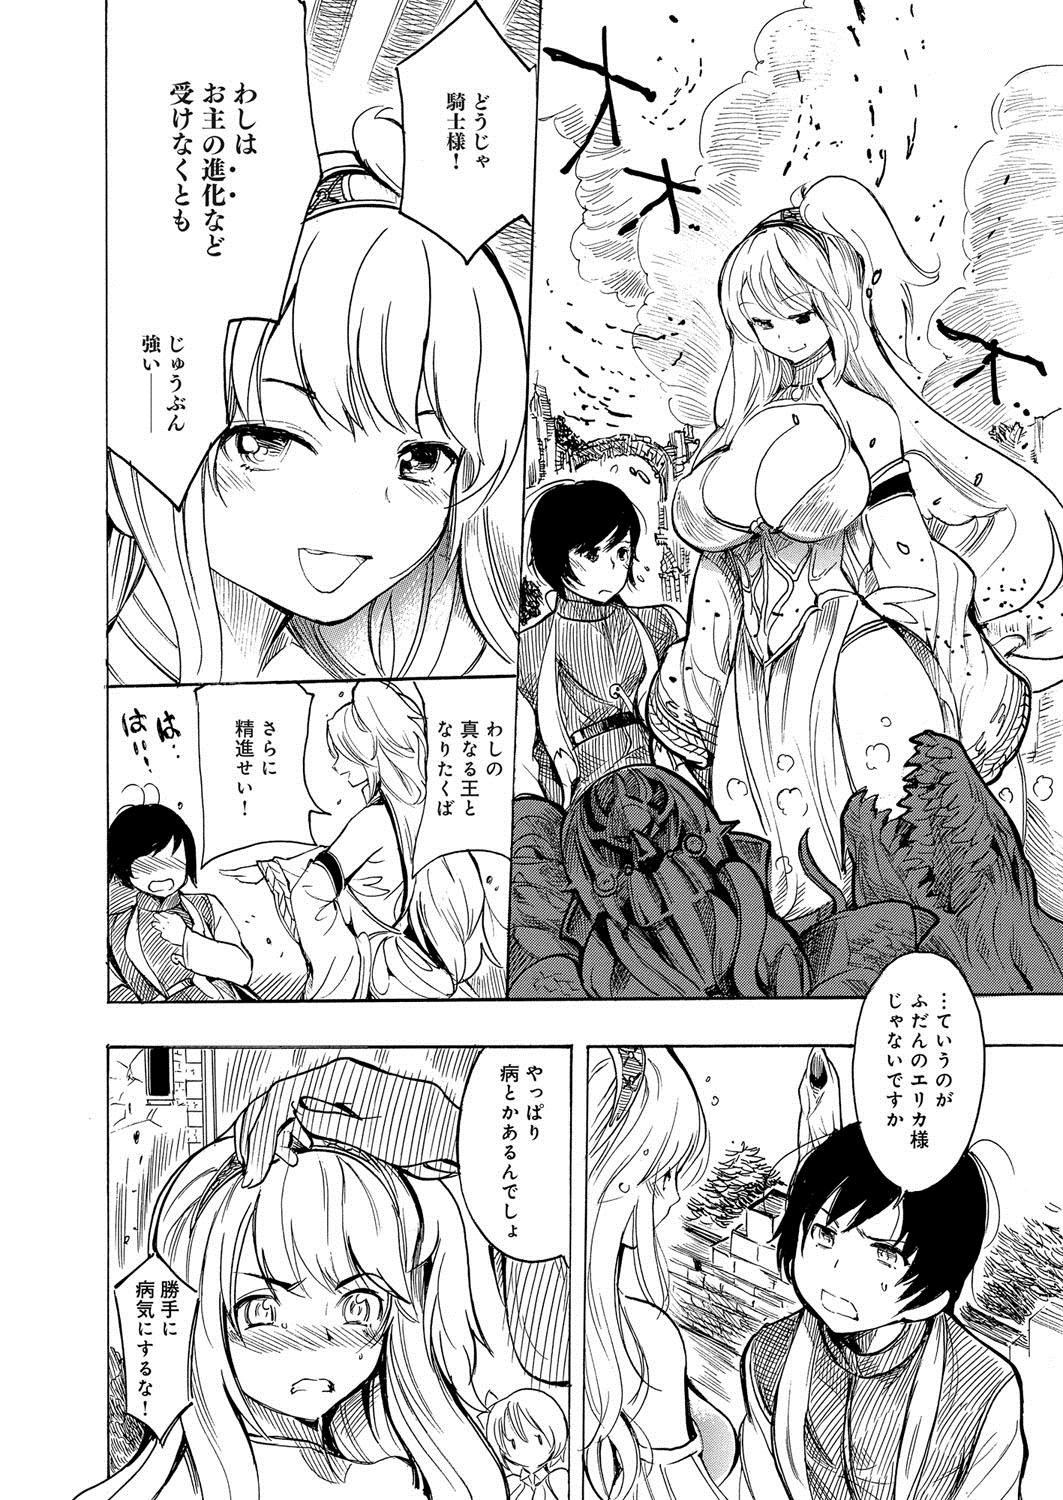 [Anthology] Lord of Valkyrie Adult - Comic Anthology R18 Handakara Saigomade... Mou, Kishi-sama no Ecchi♪ 28